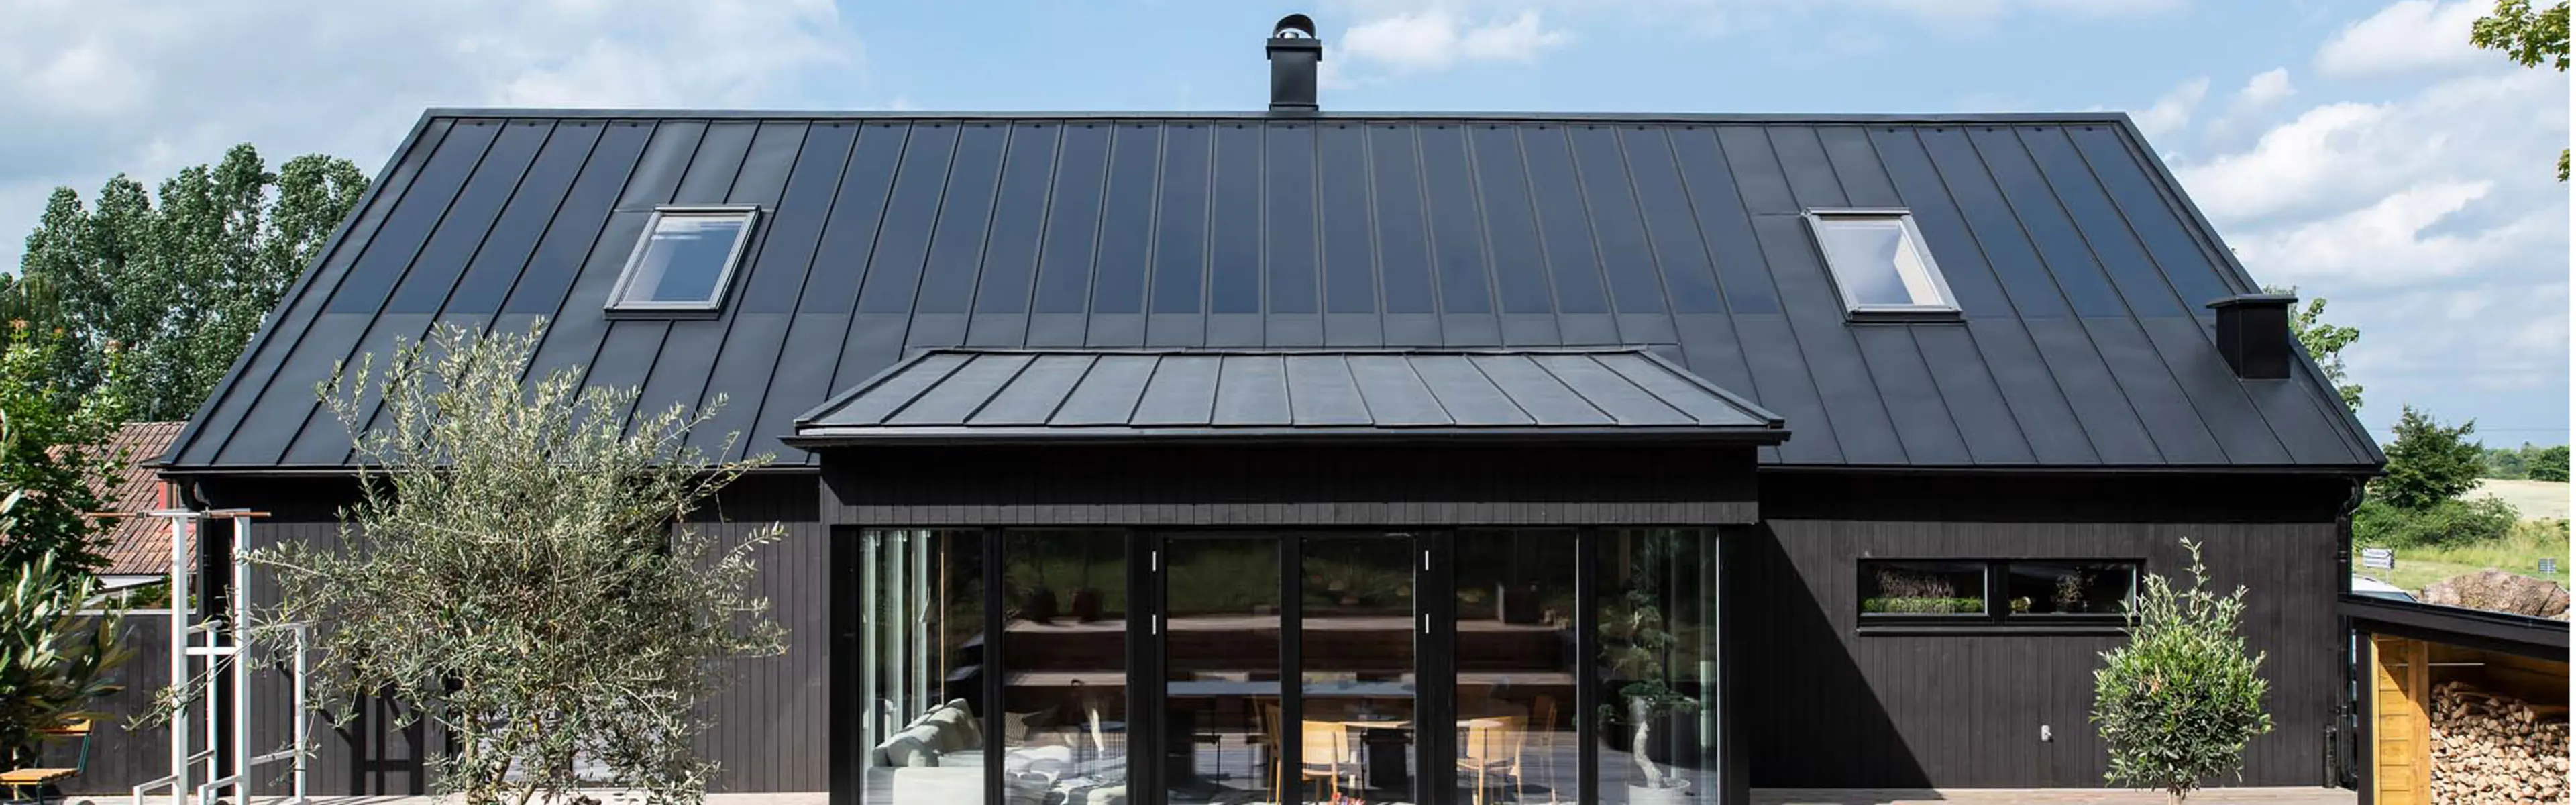 Svart hus med solceller på taket.